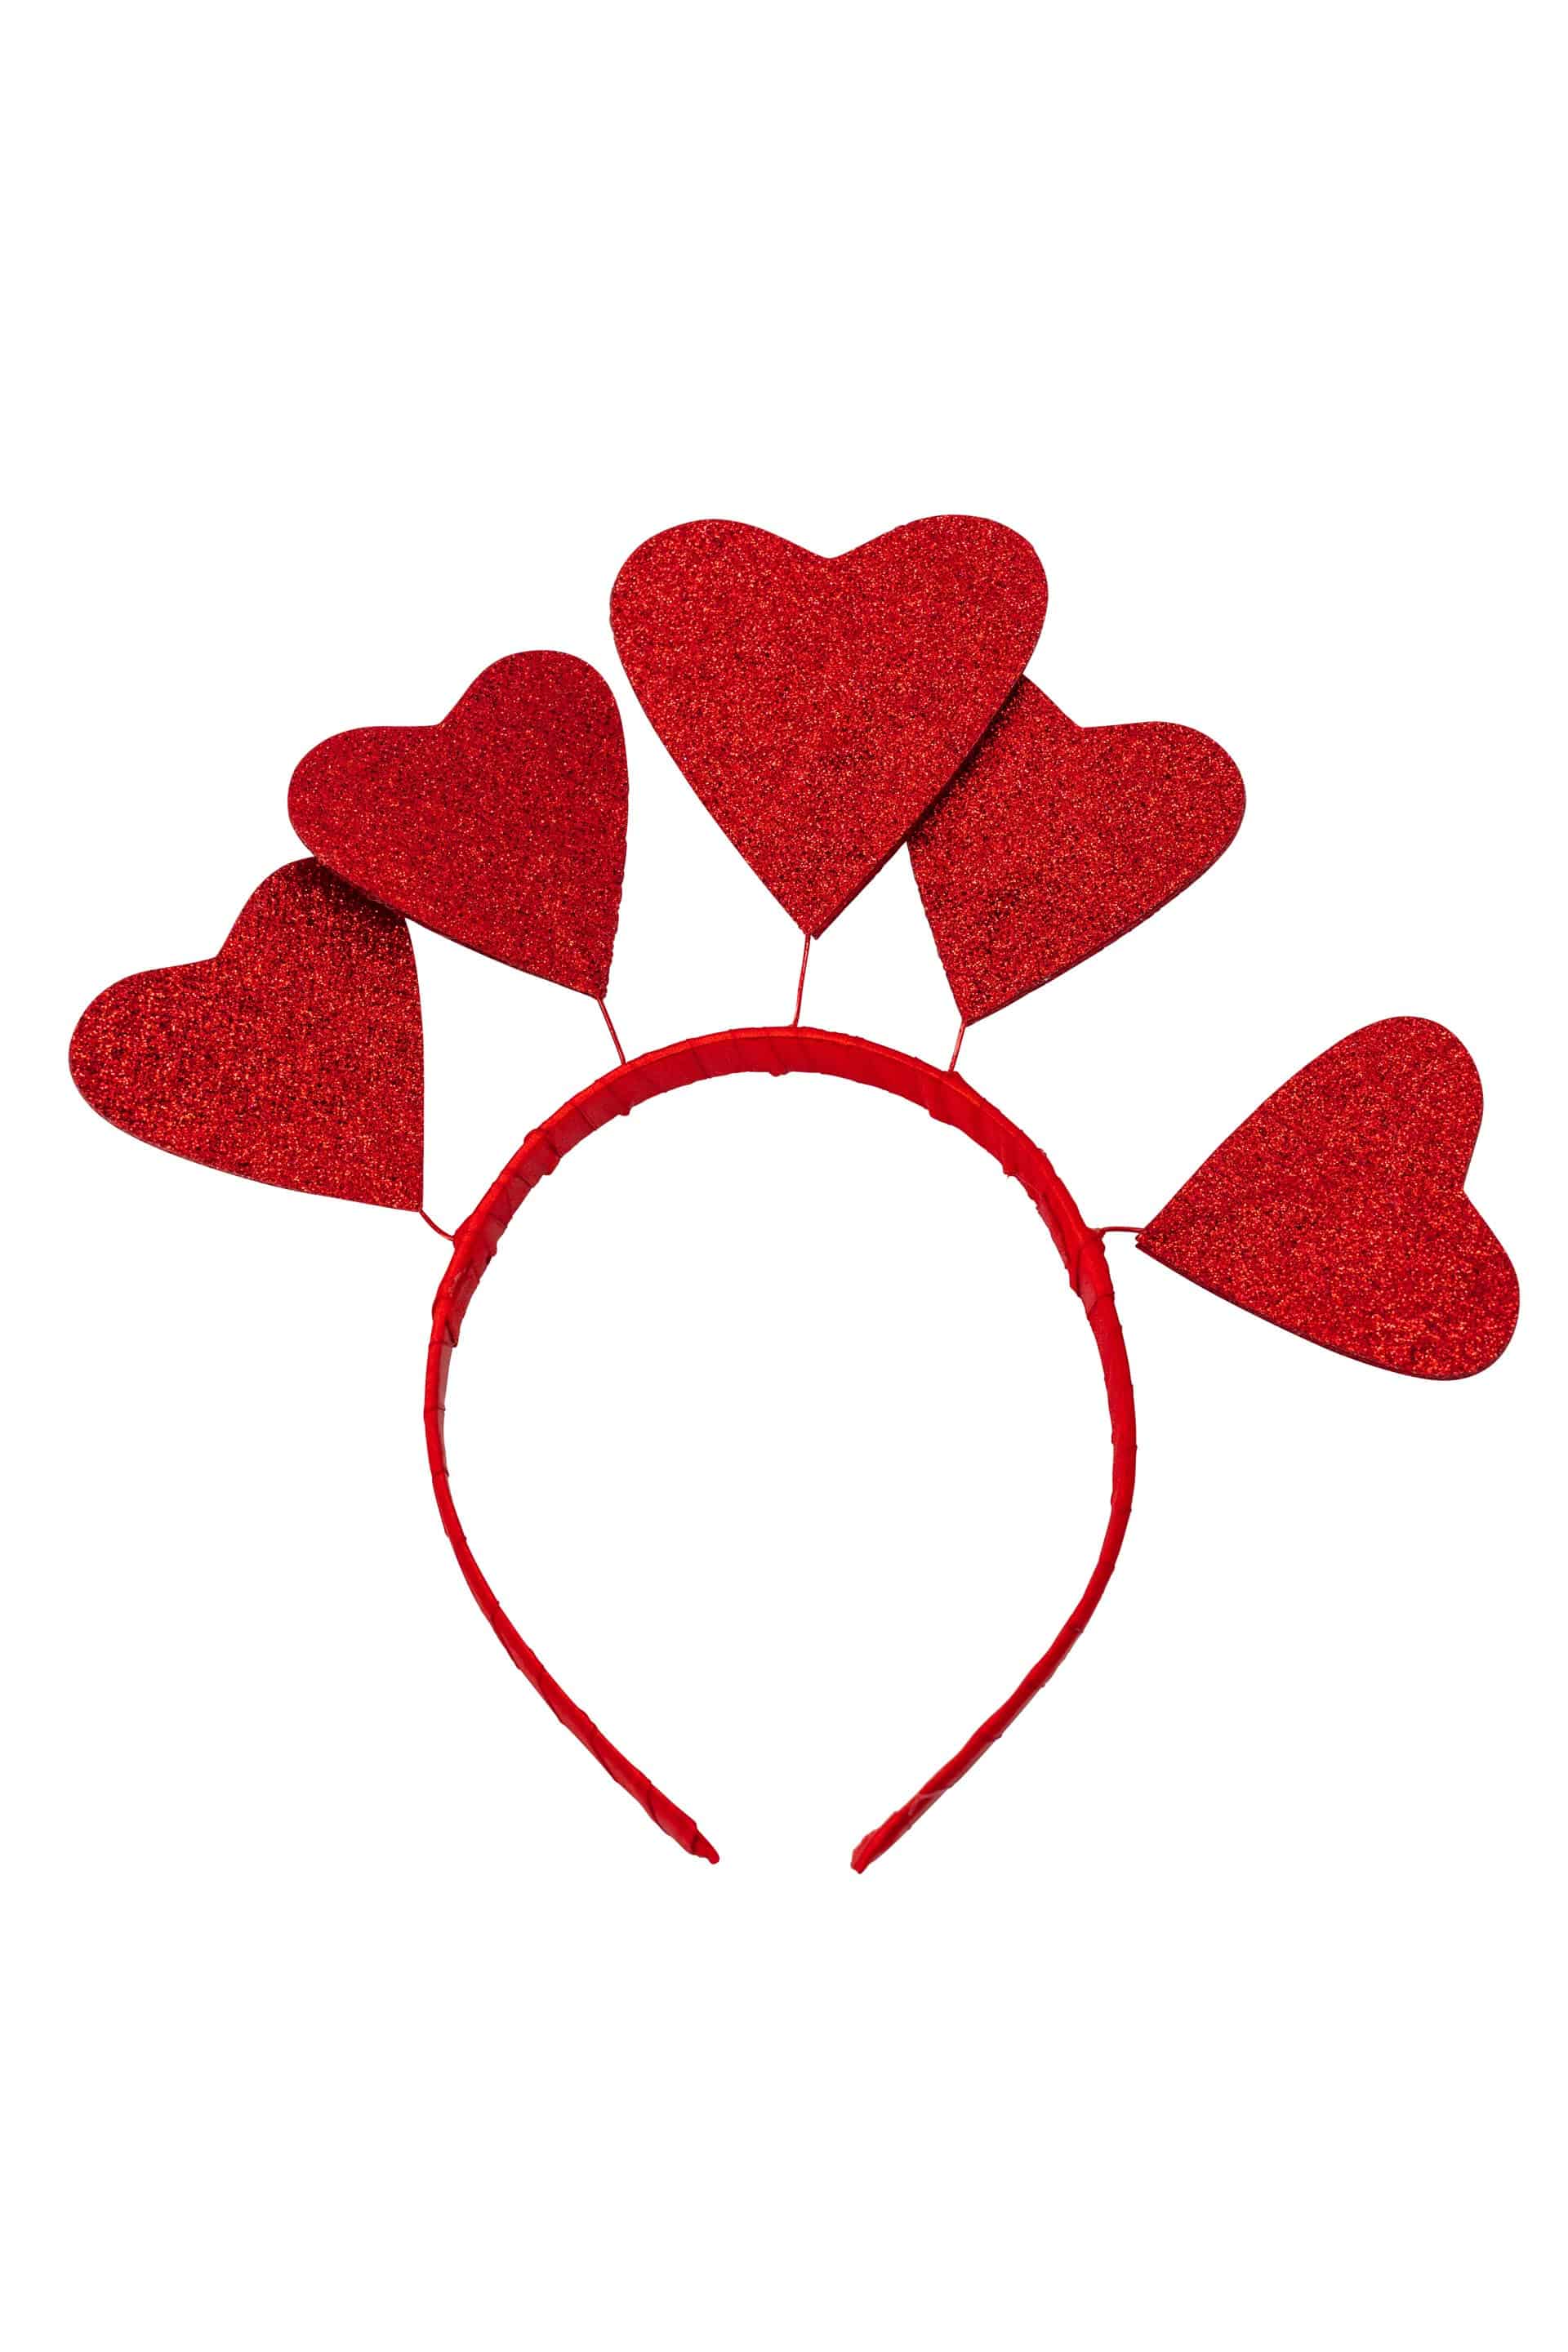 Haarreif Herzbogen mit 5 Herzen Damen rot Einheitsgröße